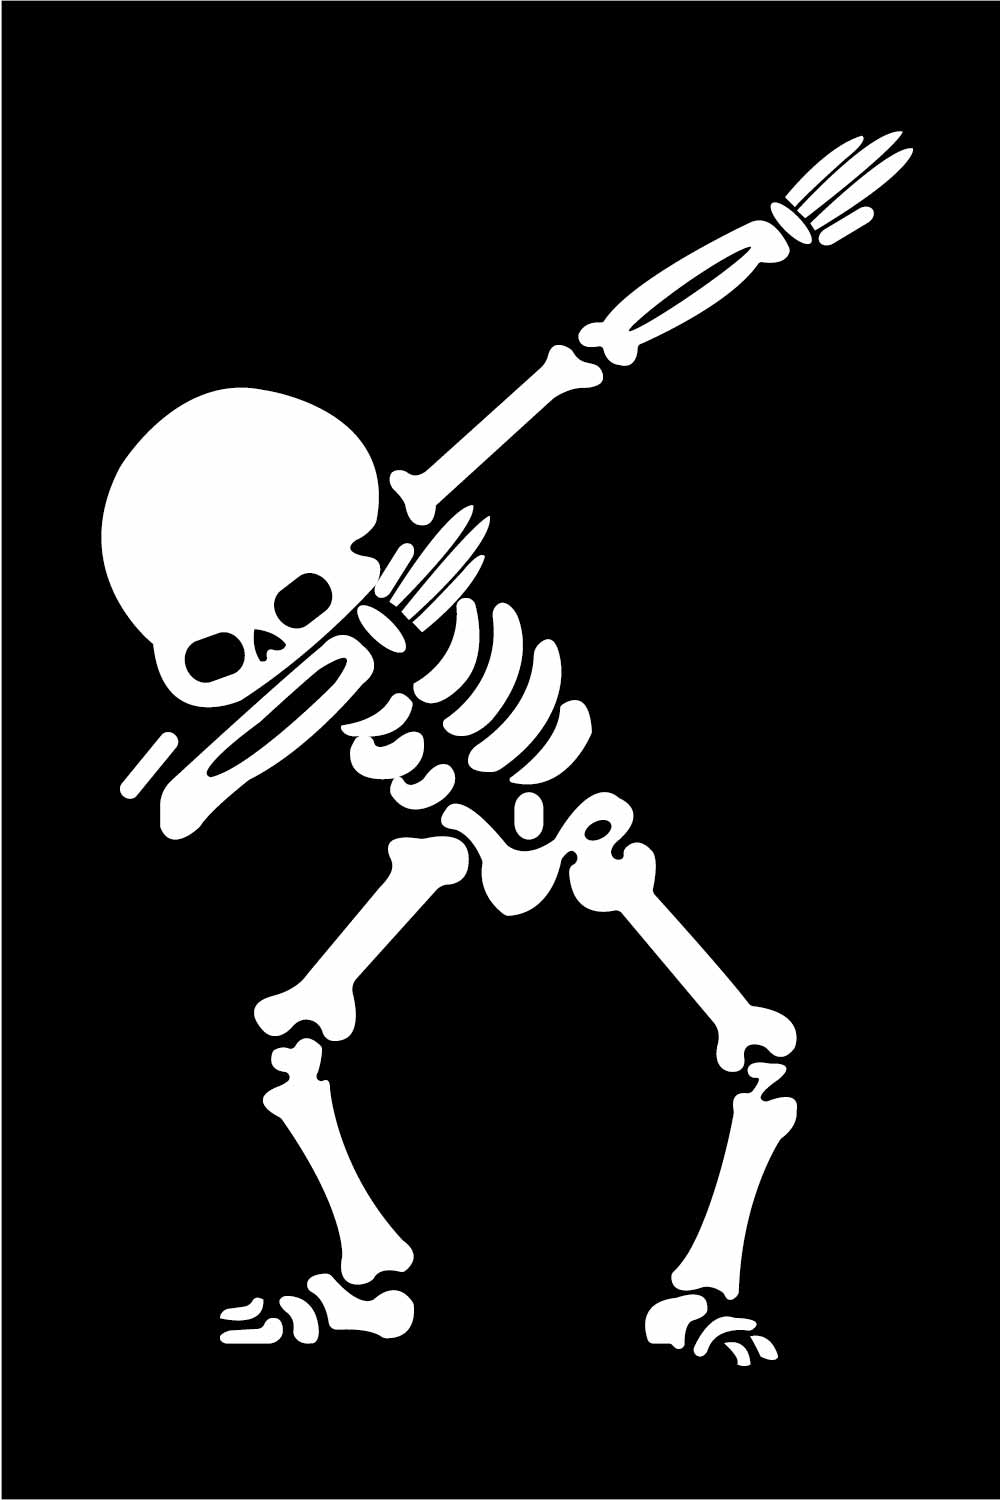 Illustration of calaca dancing on black background skeleton dancer vector pinterest preview image.